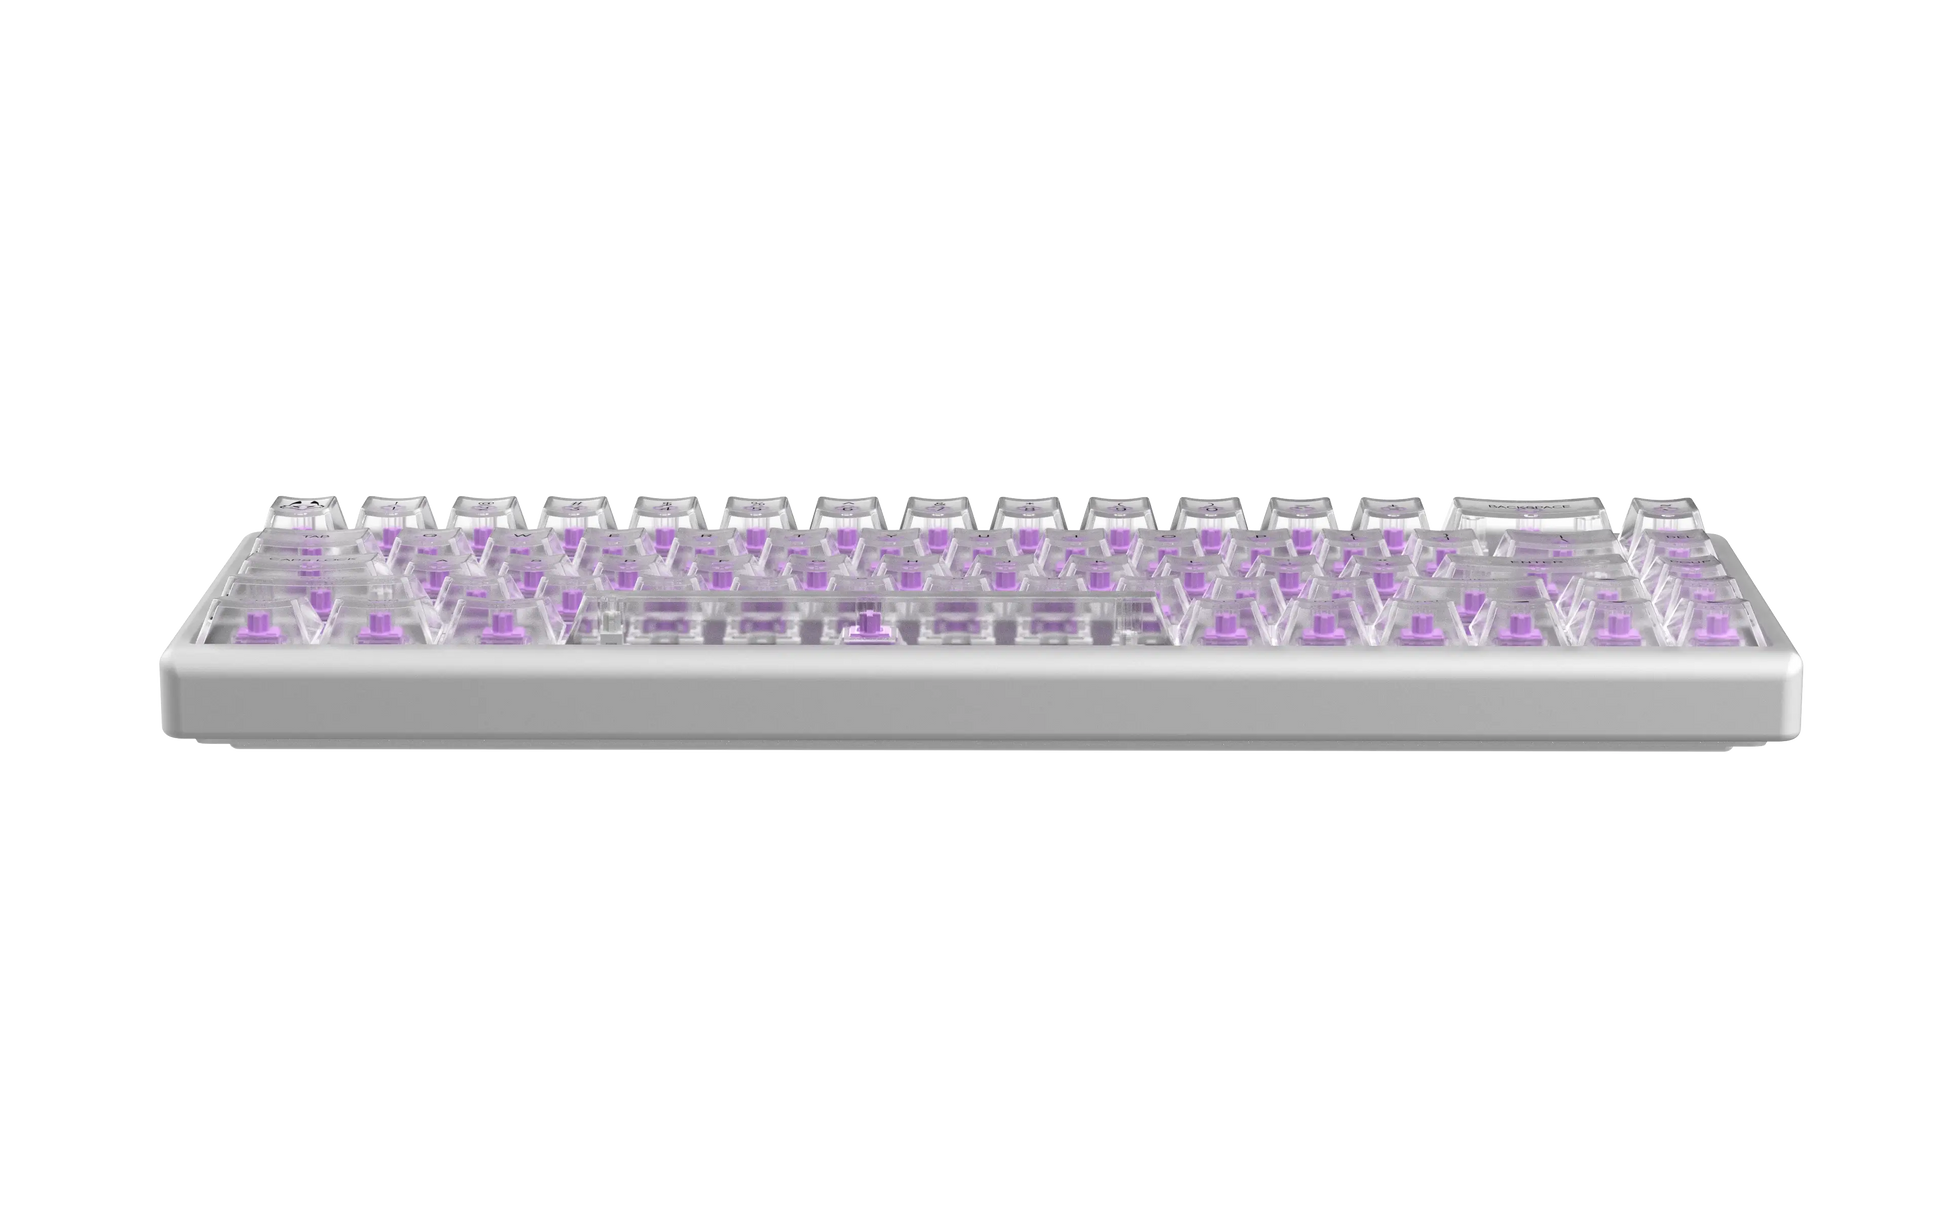 Polar 65 Magnetic Keyboard - Phantom Series